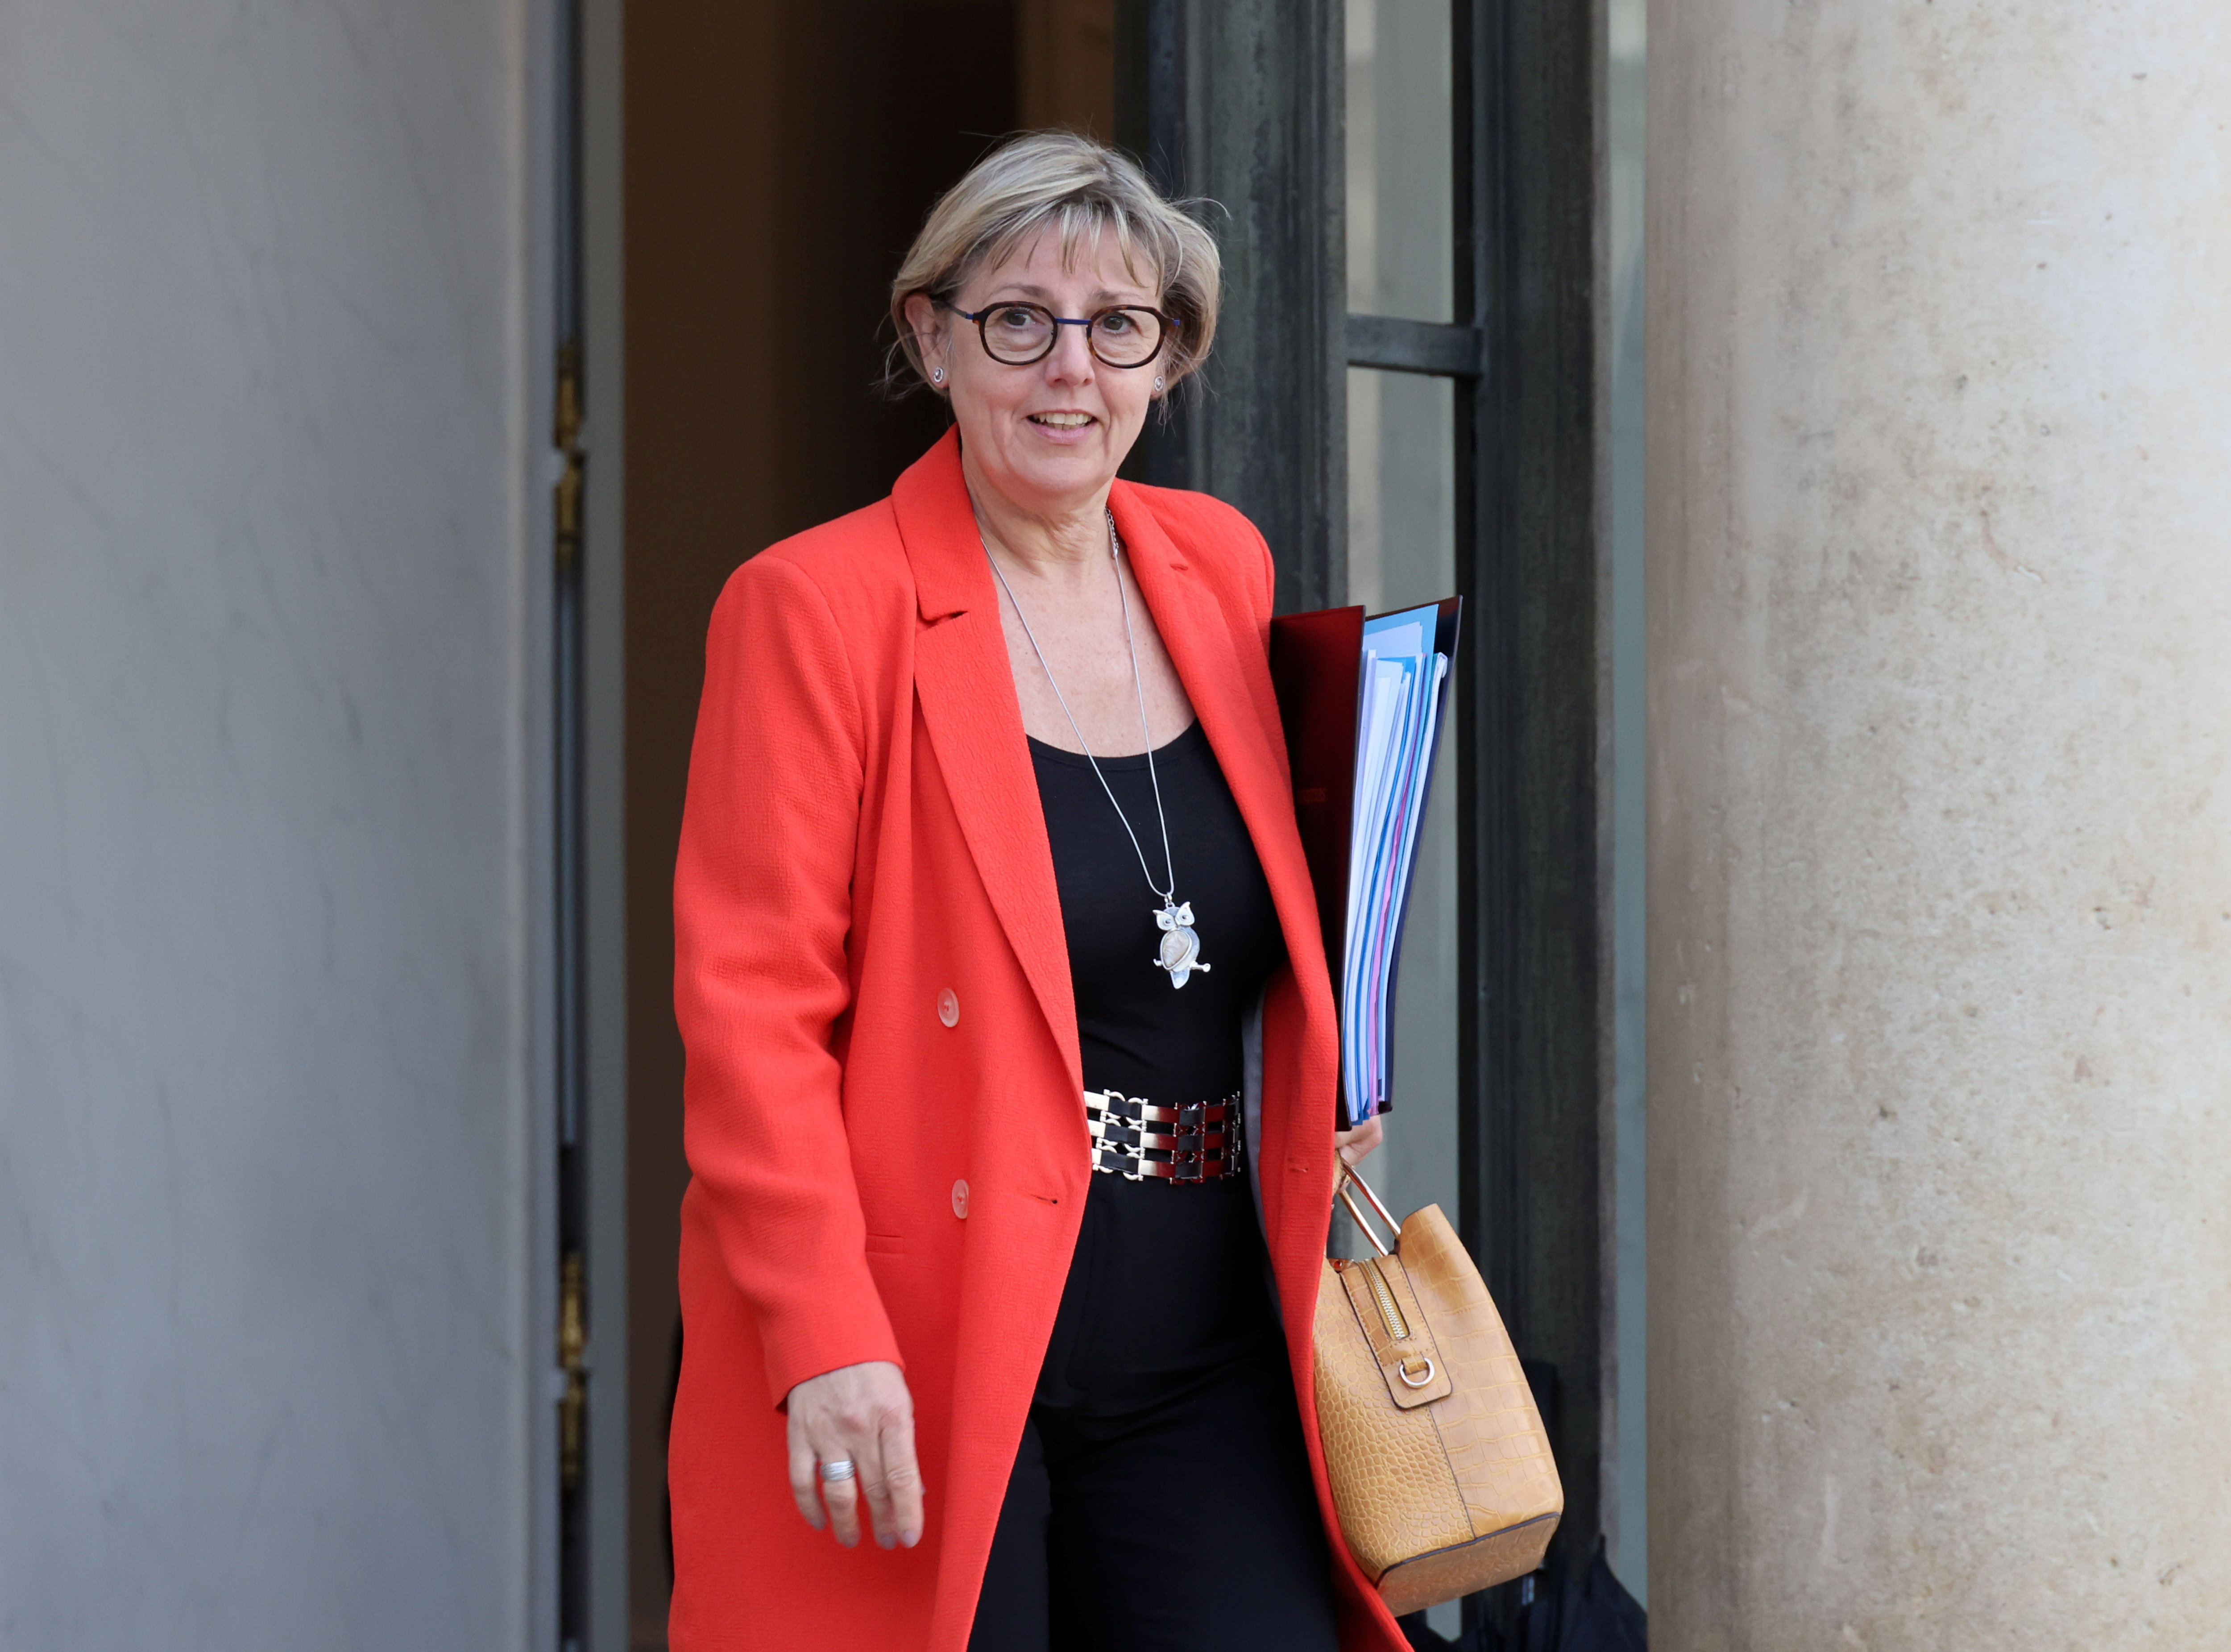 La ministre de l'Enseignement supérieur et de la Recherche, Sylvie Retailleau, à la sortie d'une conseil des ministres. LP/Delphine Goldsztejn